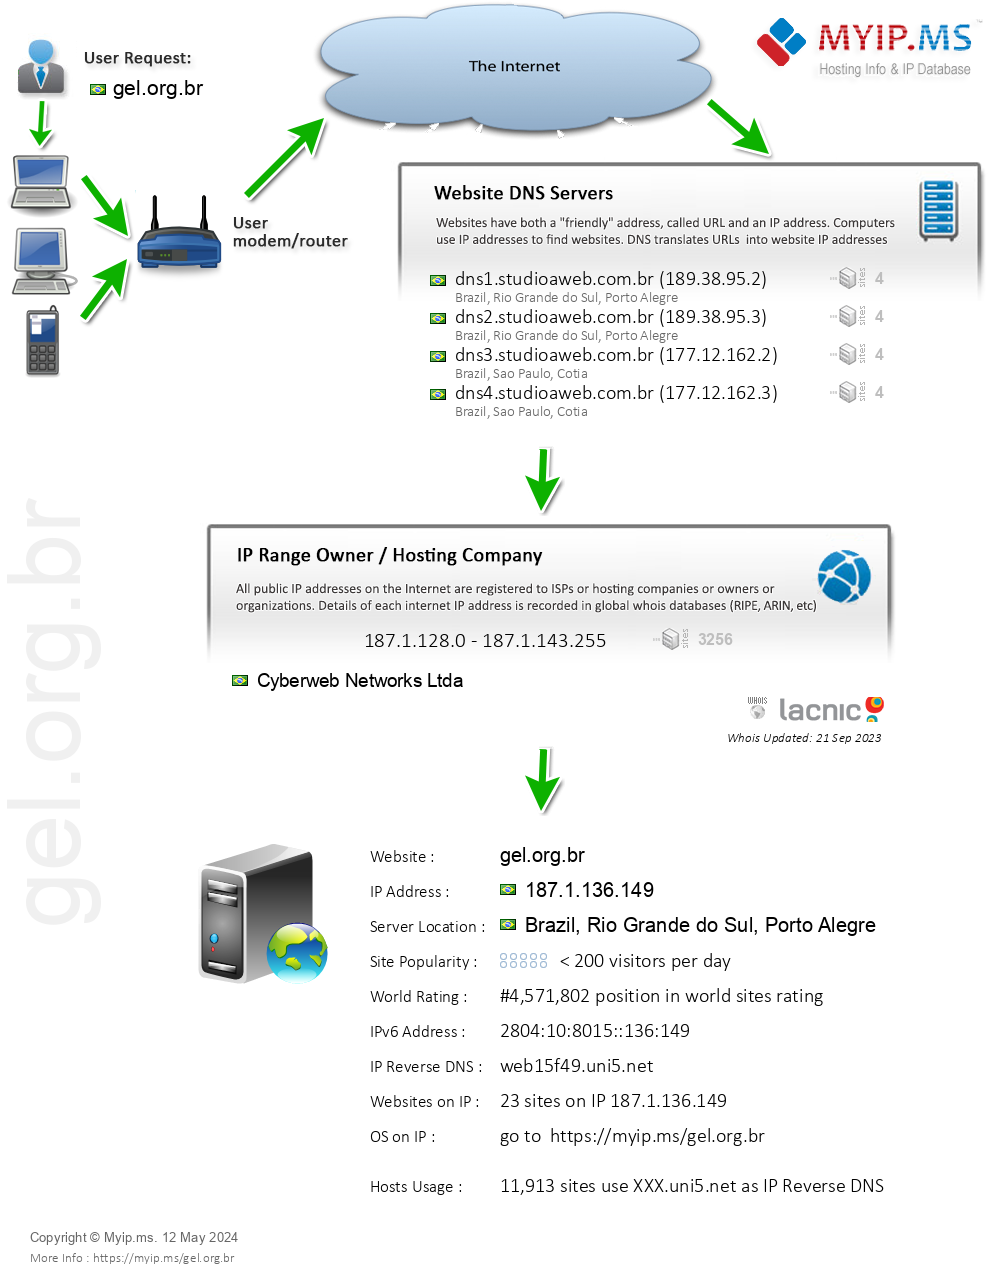 Gel.org.br - Website Hosting Visual IP Diagram